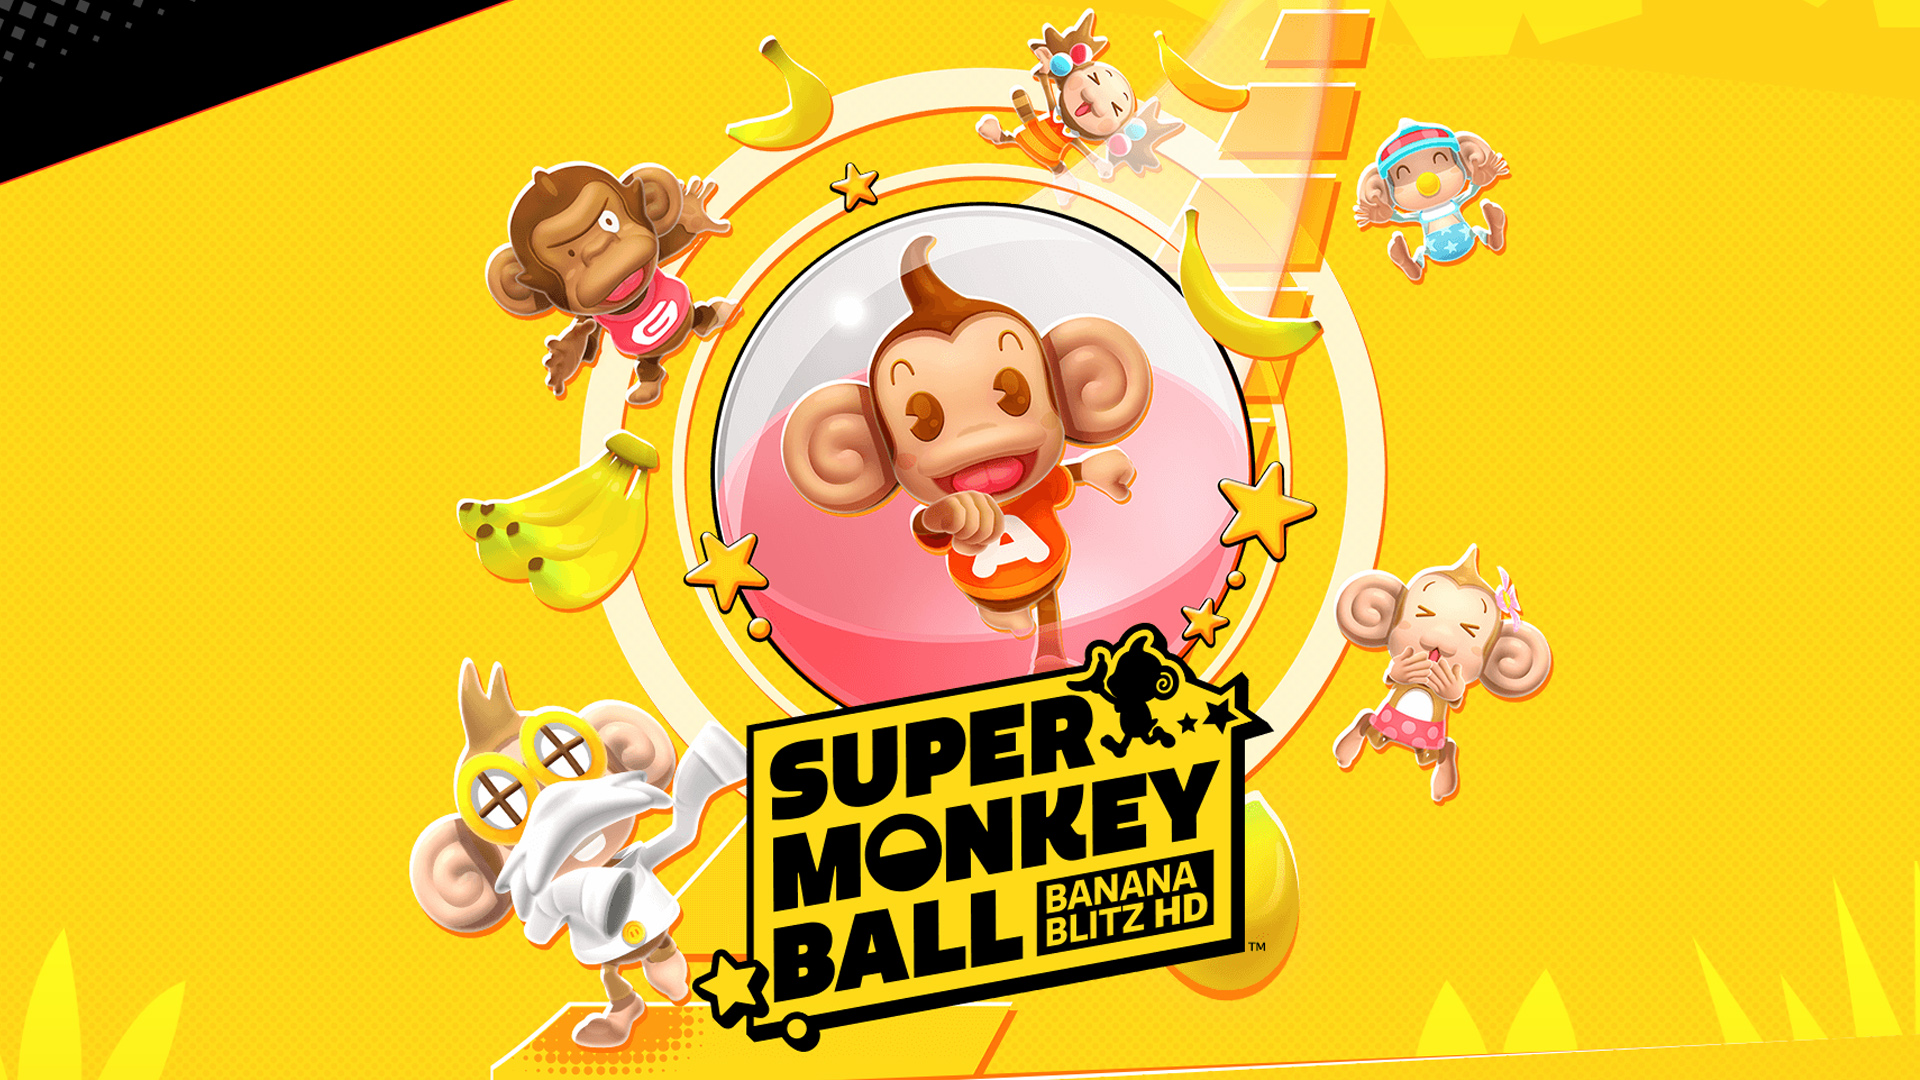 Super monkey ball banana. Super Monkey Ball. Super Monkey Ball: Banana Blitz. Super Monkey Ball: Banana Blitz Wii.